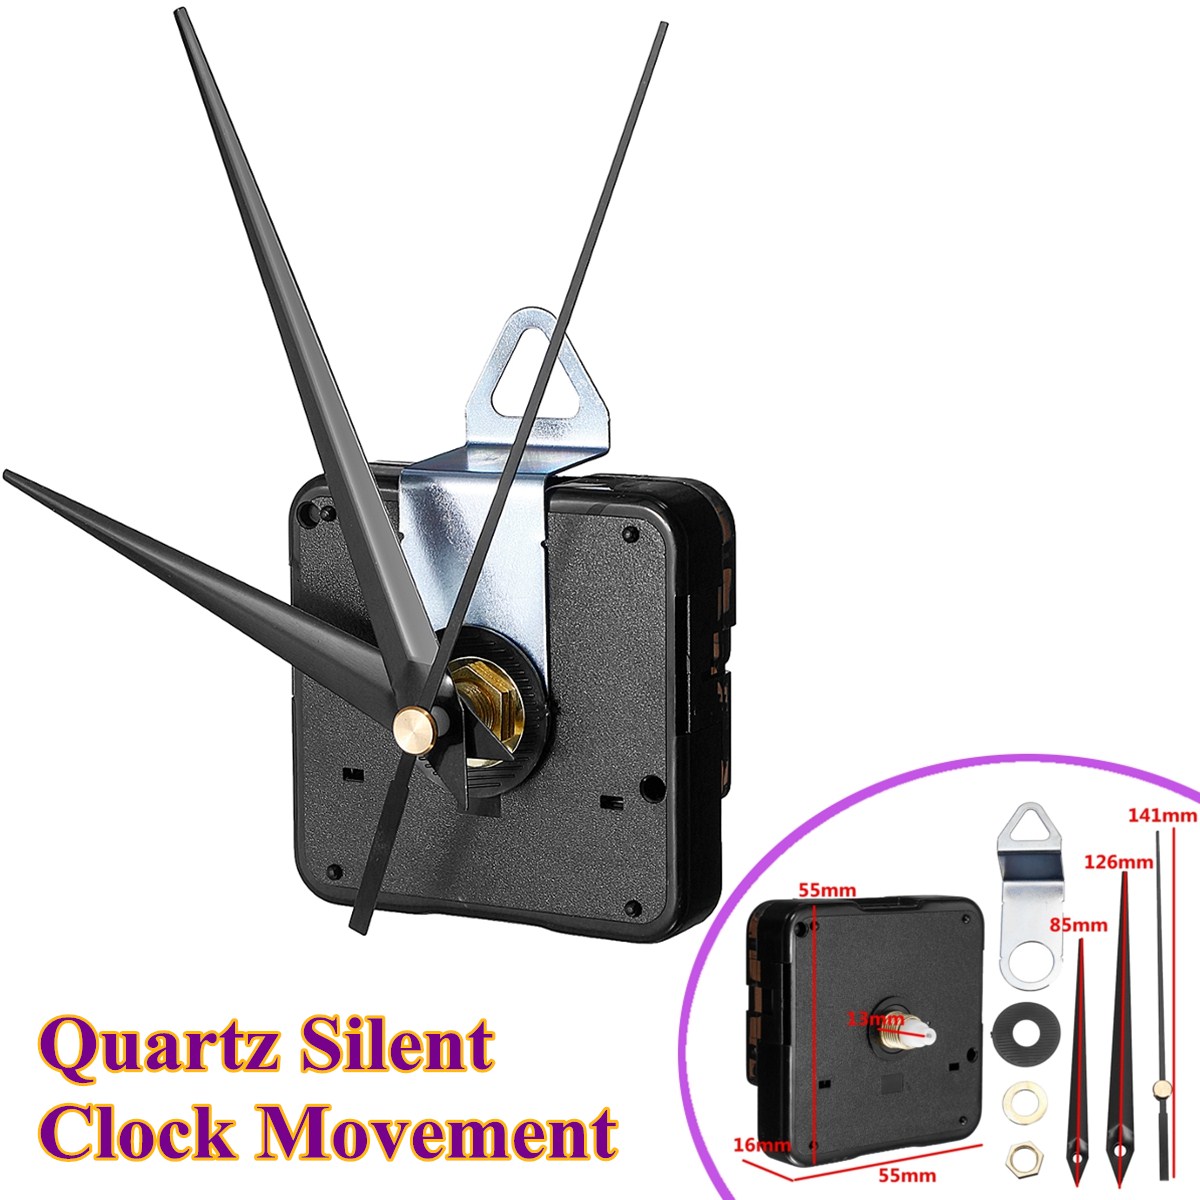 13mm-Quartz-Silent-Wall-Clock-Movement-Hour-Minute-Second-Hand-Clock-Movement-1353047-3